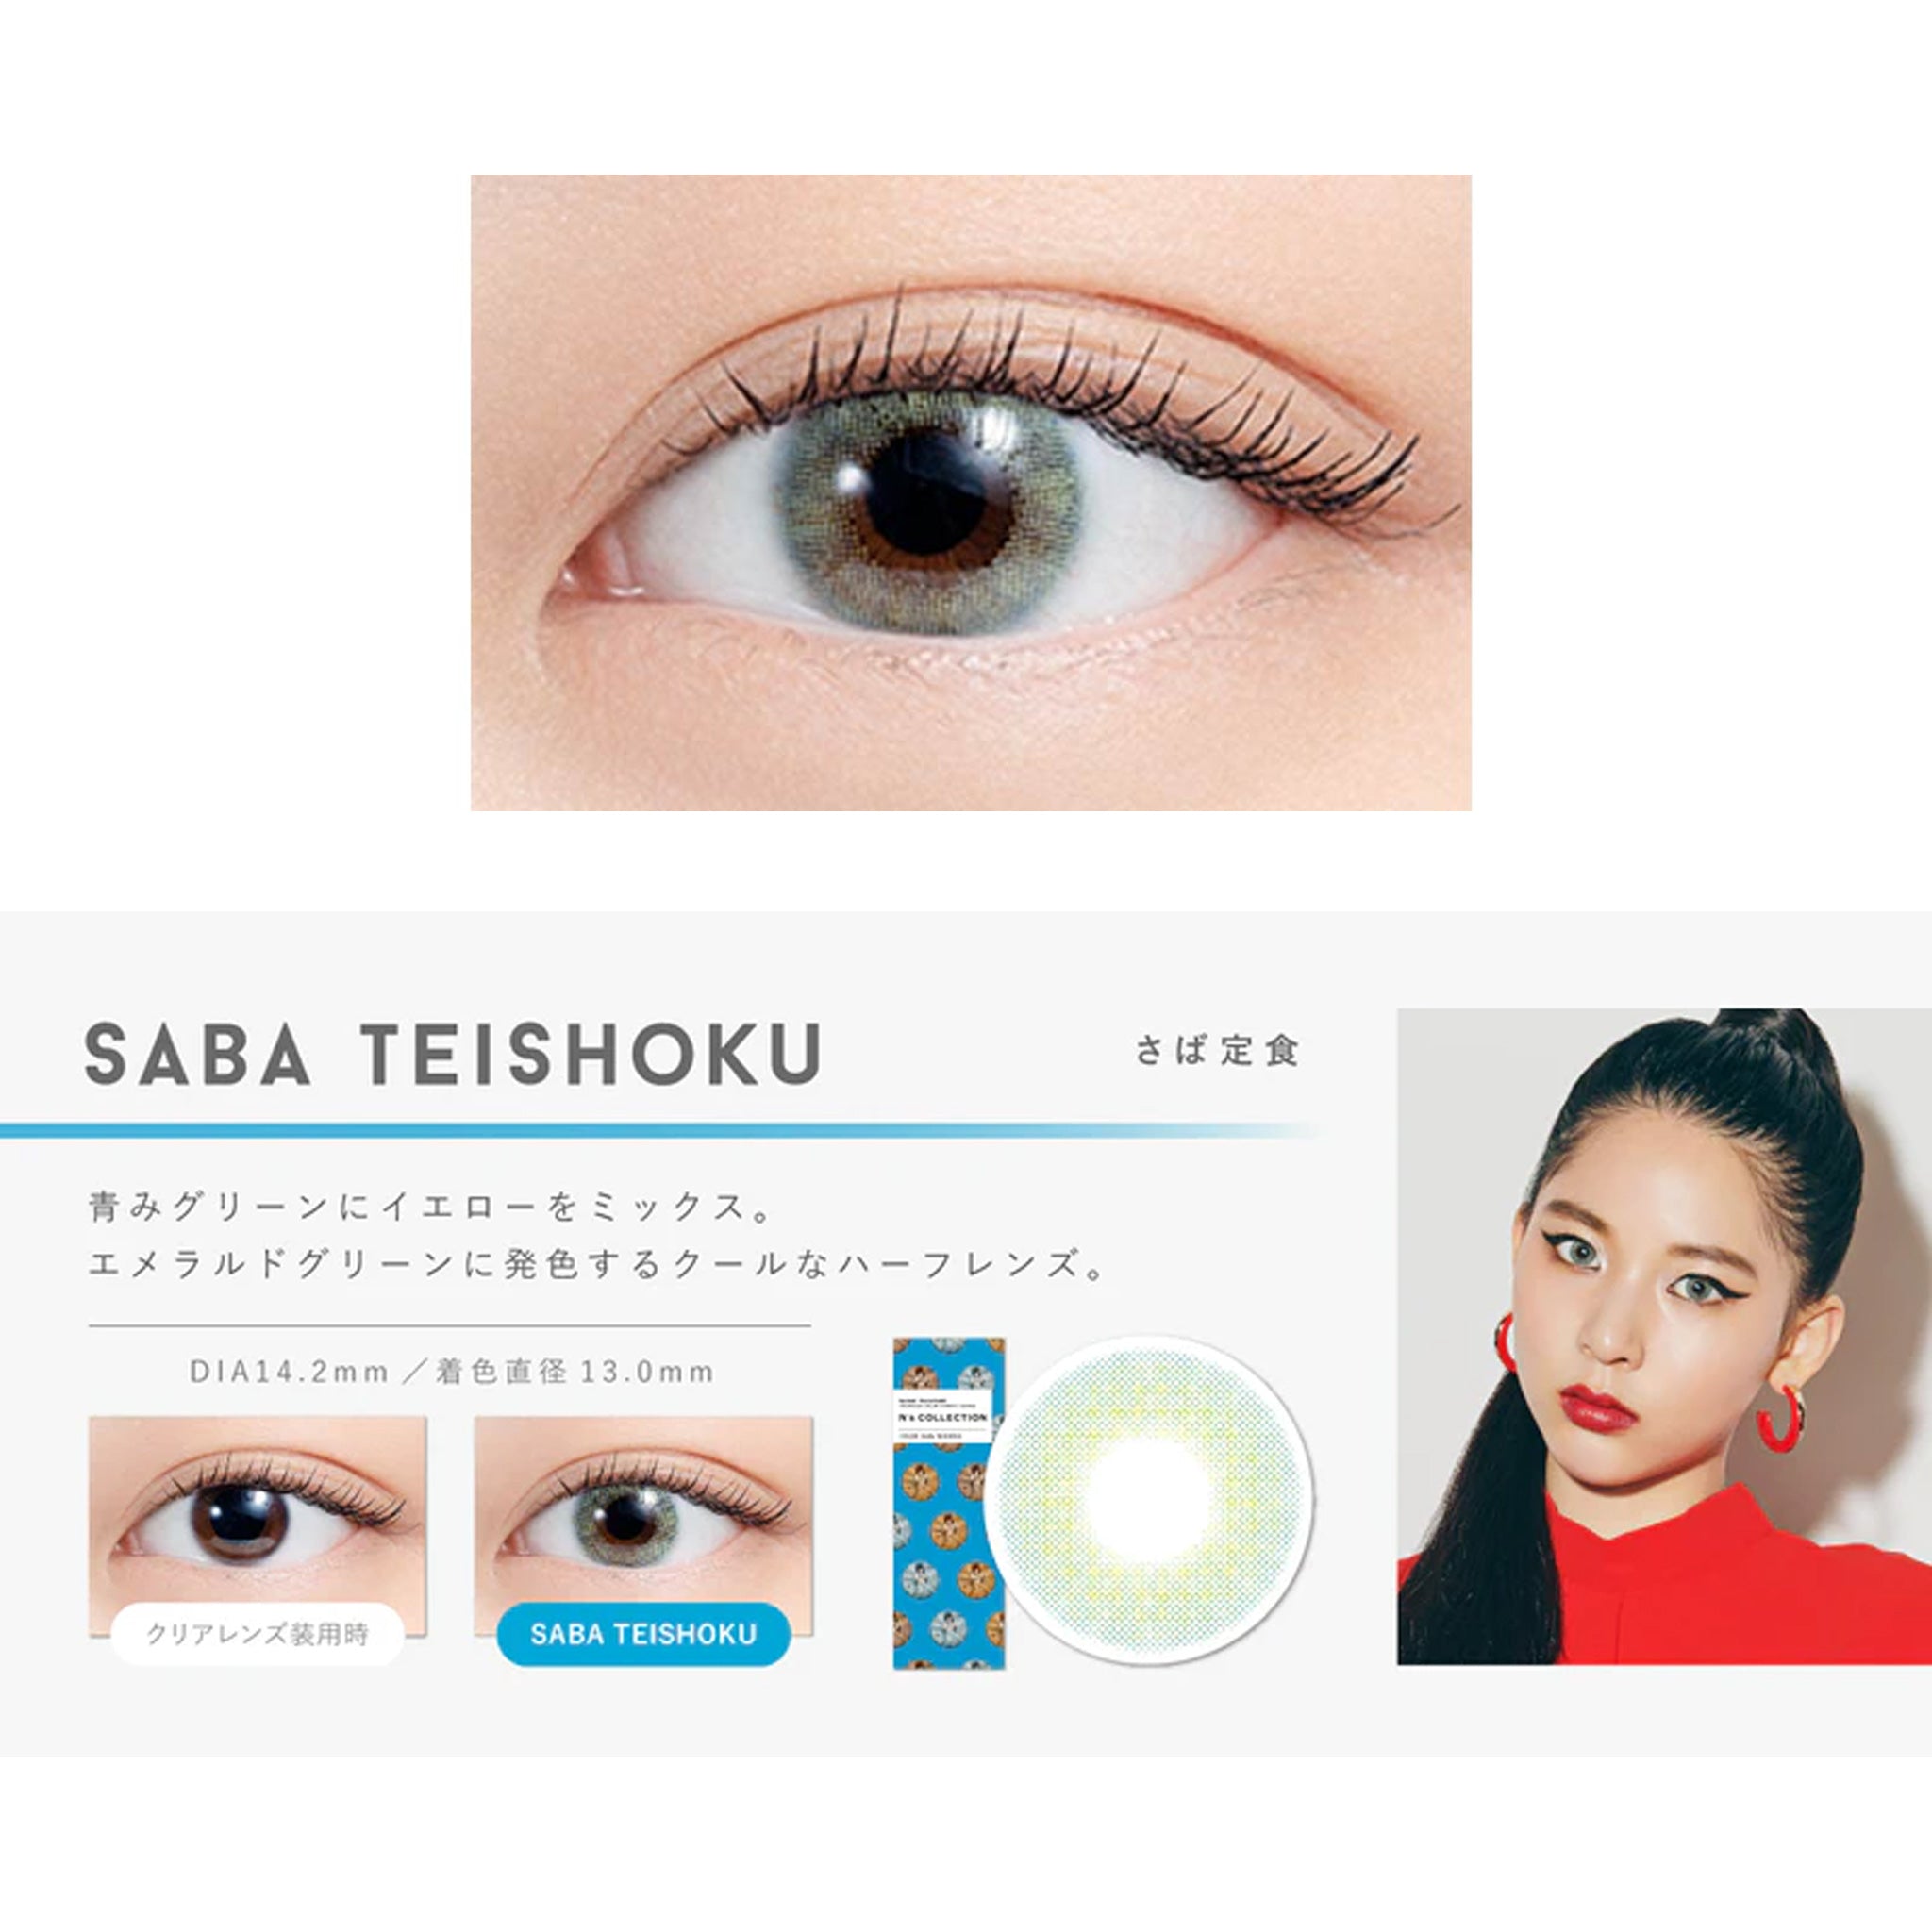 N’s Collection Daily Contact Lenses-Saba Teishoku